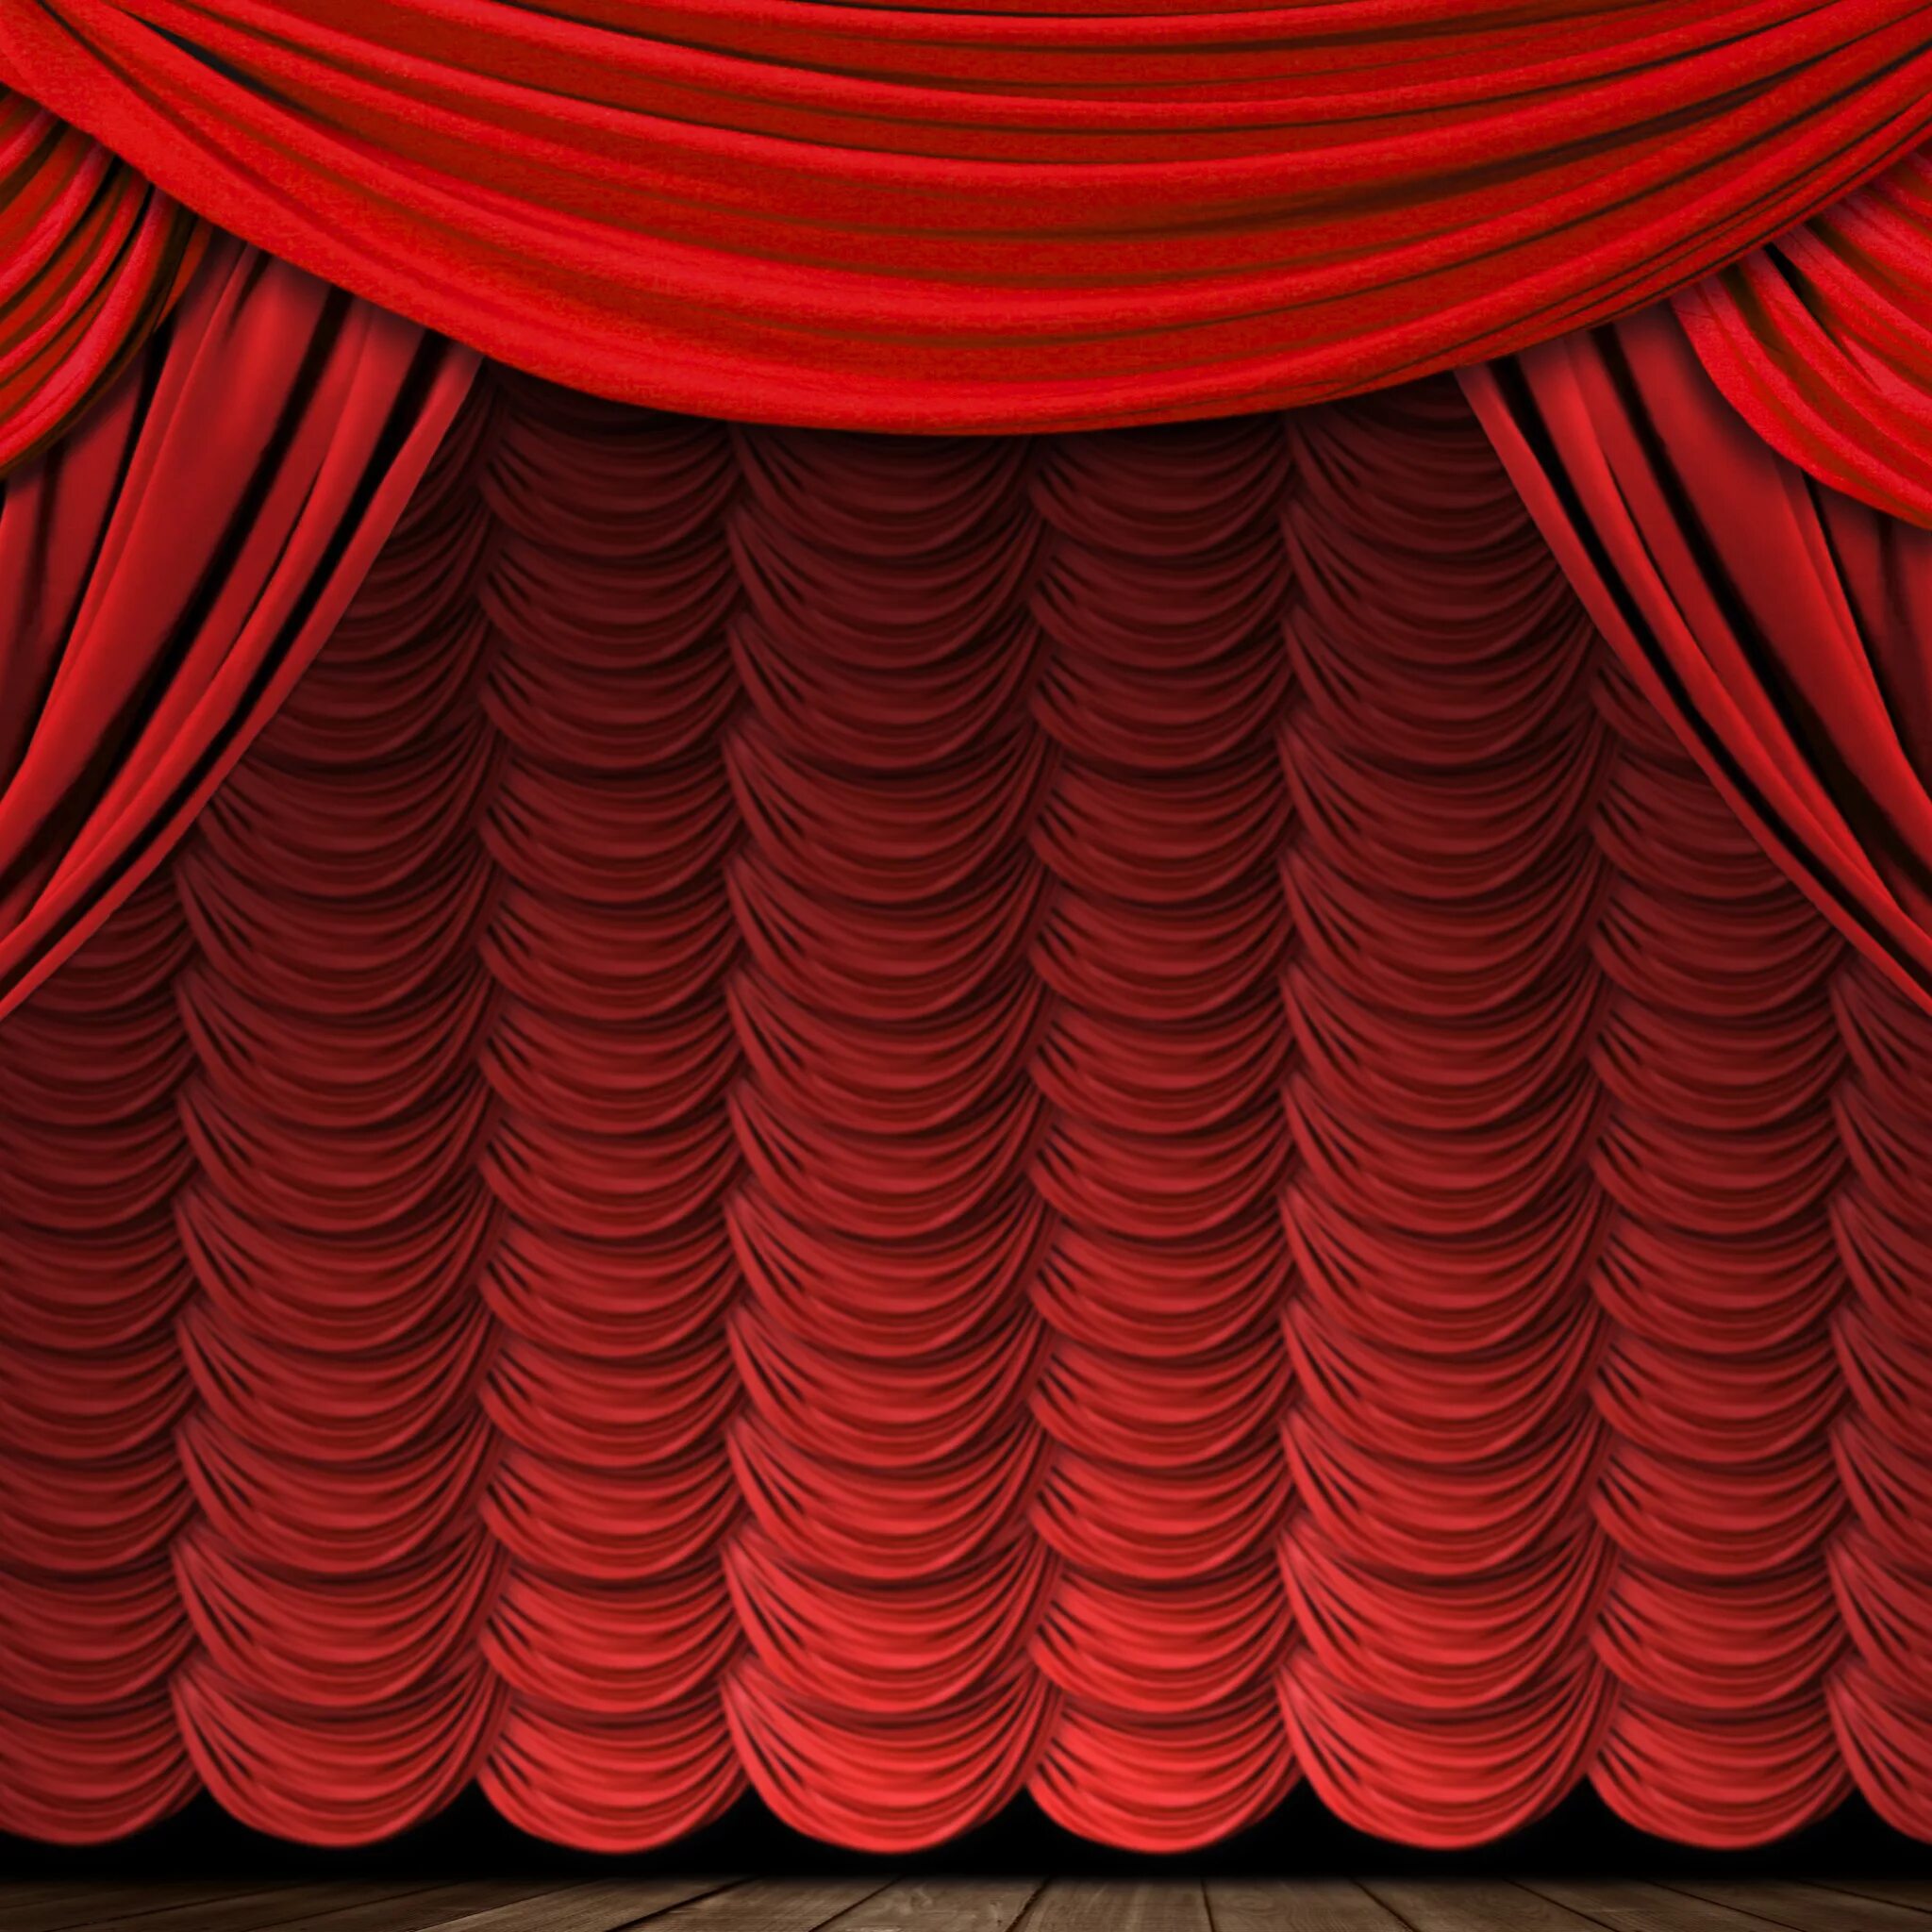 Театральный занавес. Красные шторы. Сцена театра. Занавес в театре. Red theatre